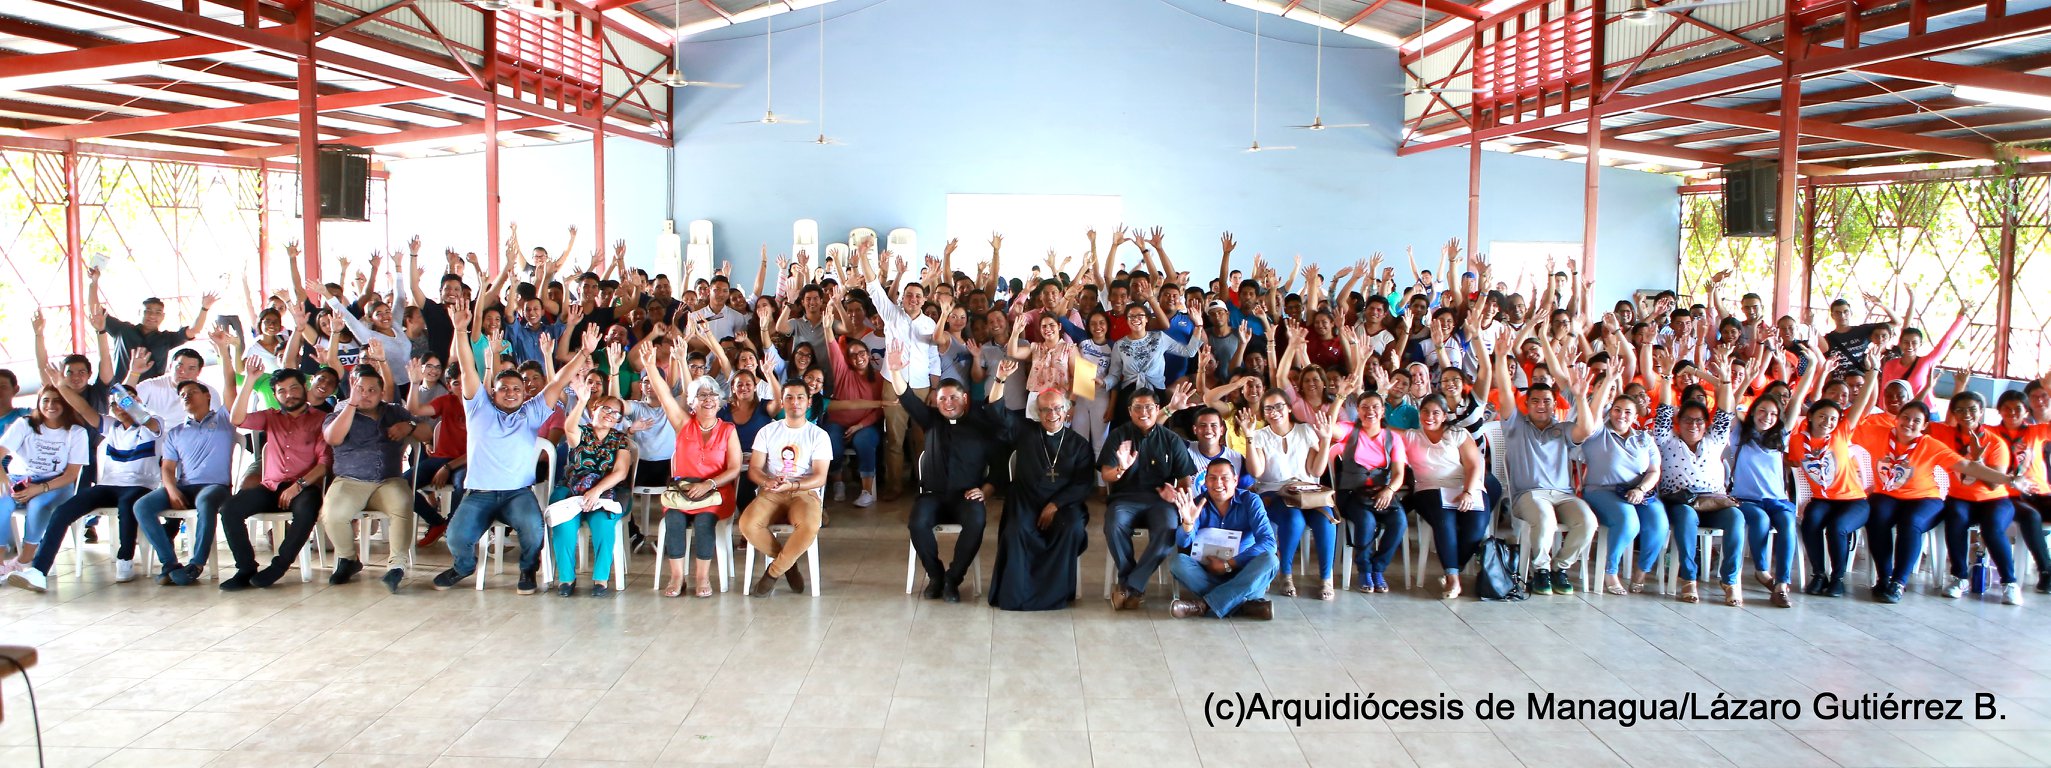 Dos mil jóvenes de la Arquidiócesis de Managua rumbo a la JMJ